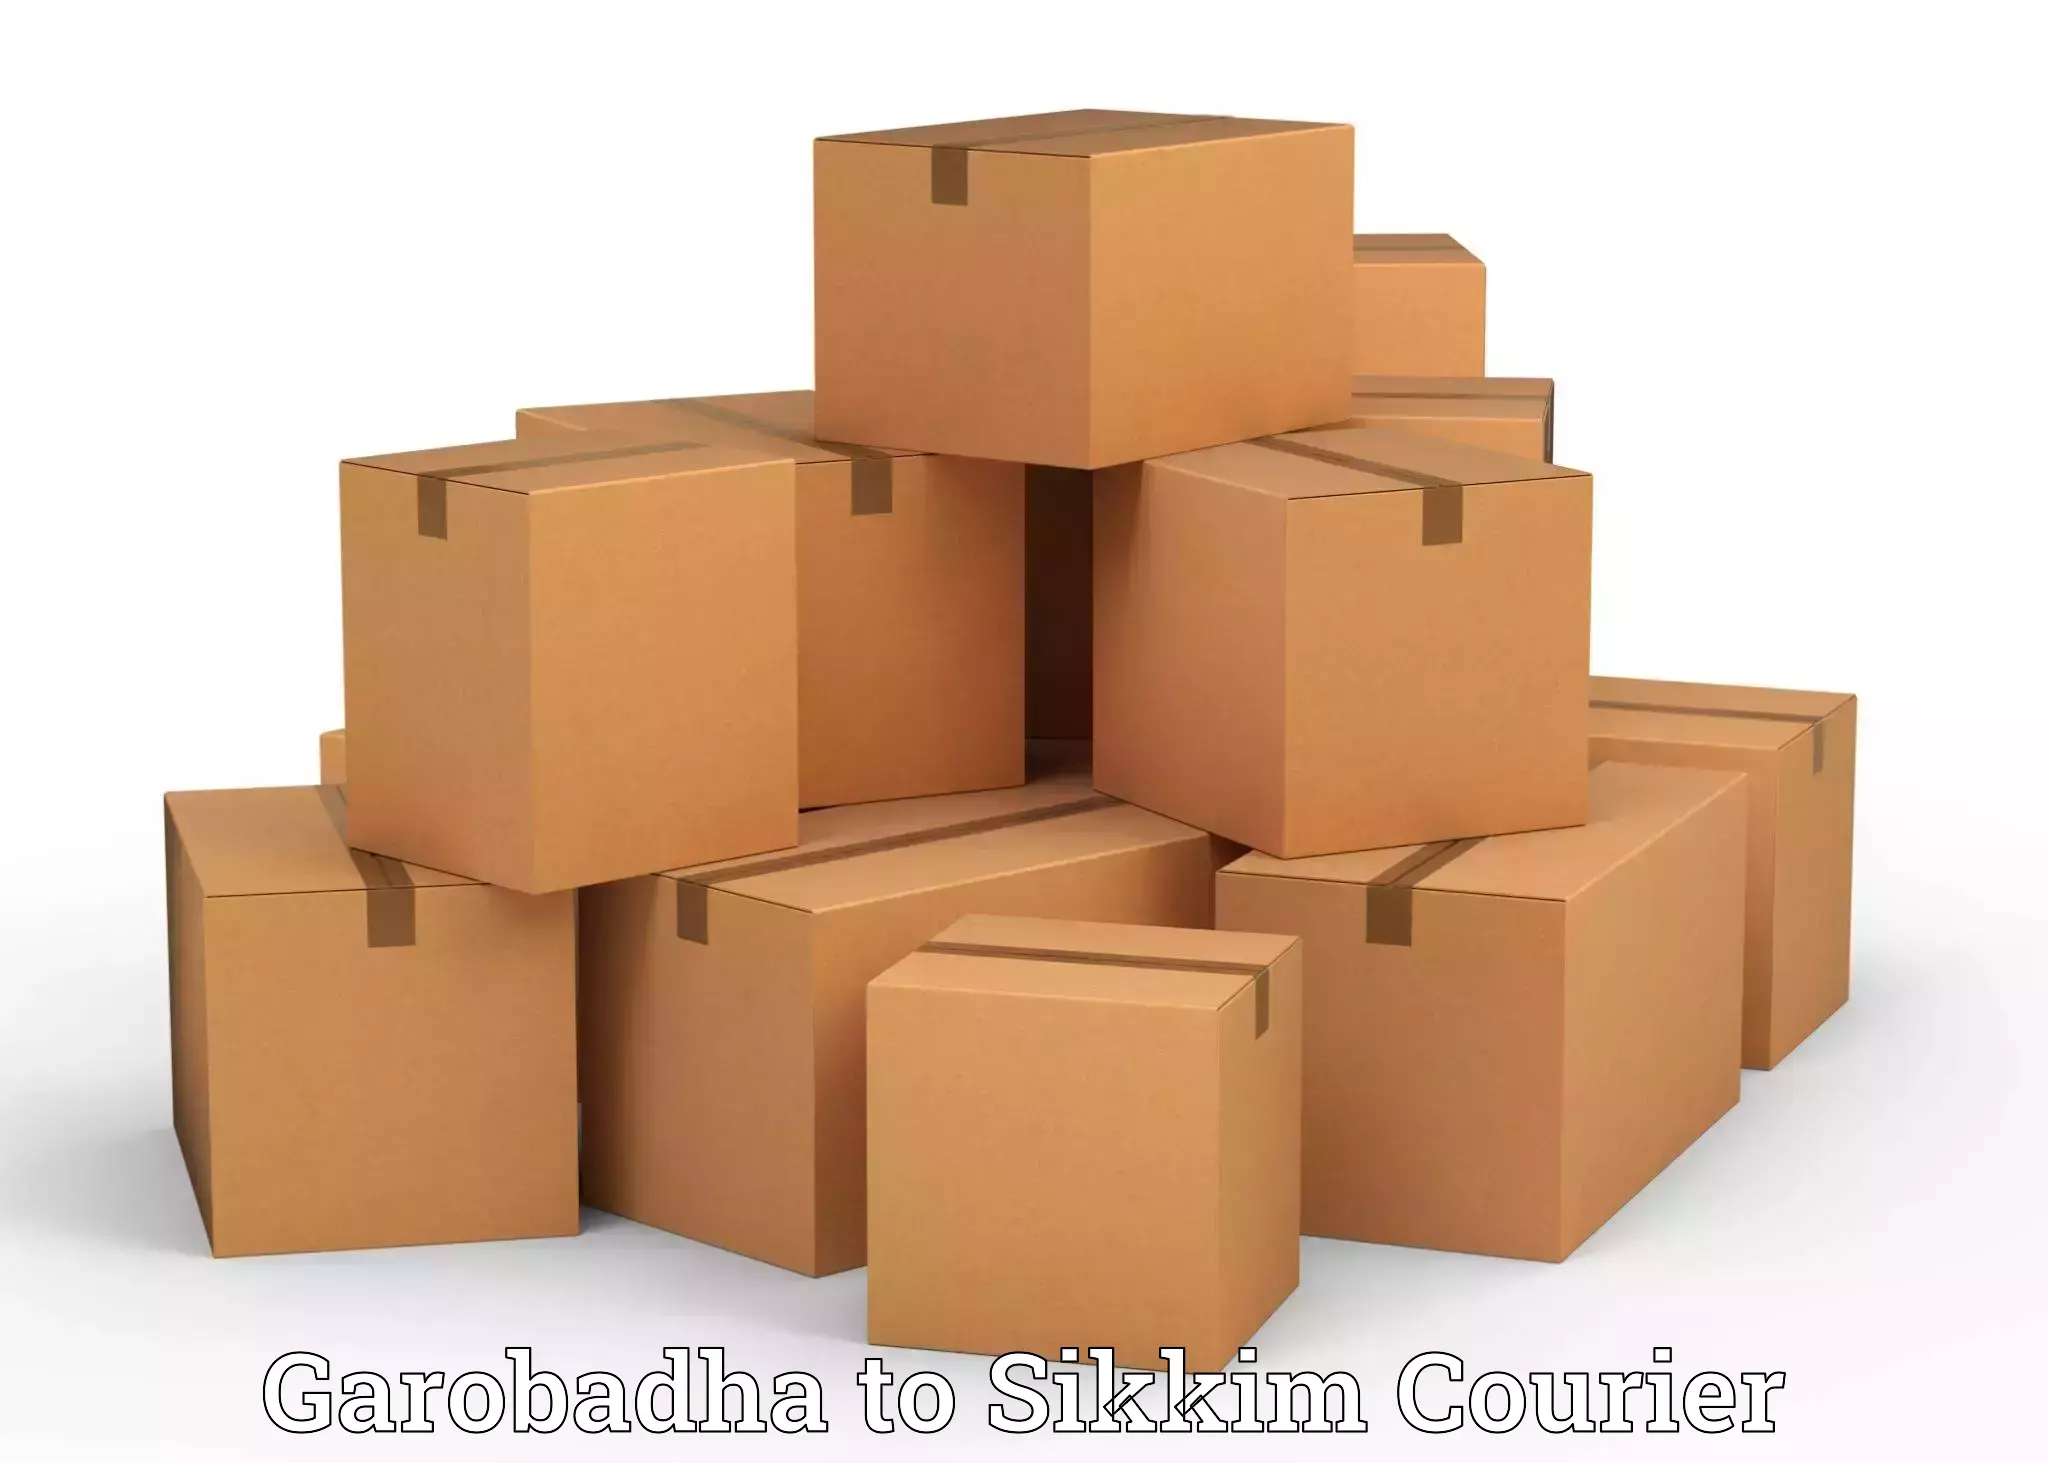 Furniture moving experts Garobadha to Mangan